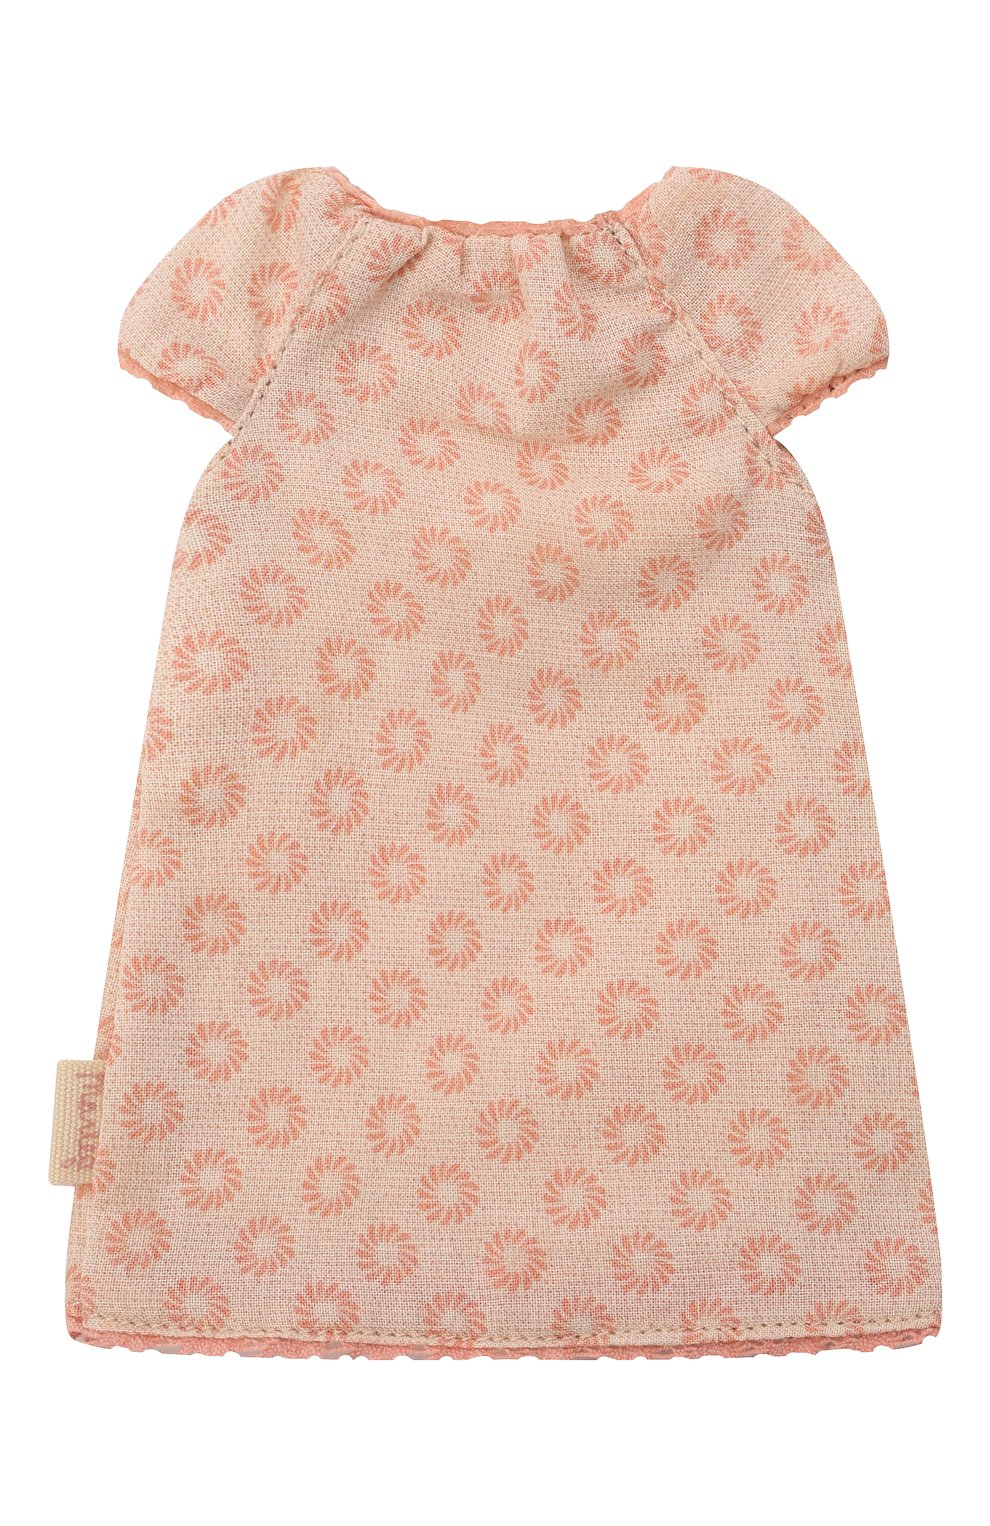 Детского одежда для игрушки ночная сорочка MAILEG розового цвета, арт. 16-1101-01 | Фото 2 (Игрушки: Фигурки - одежда)